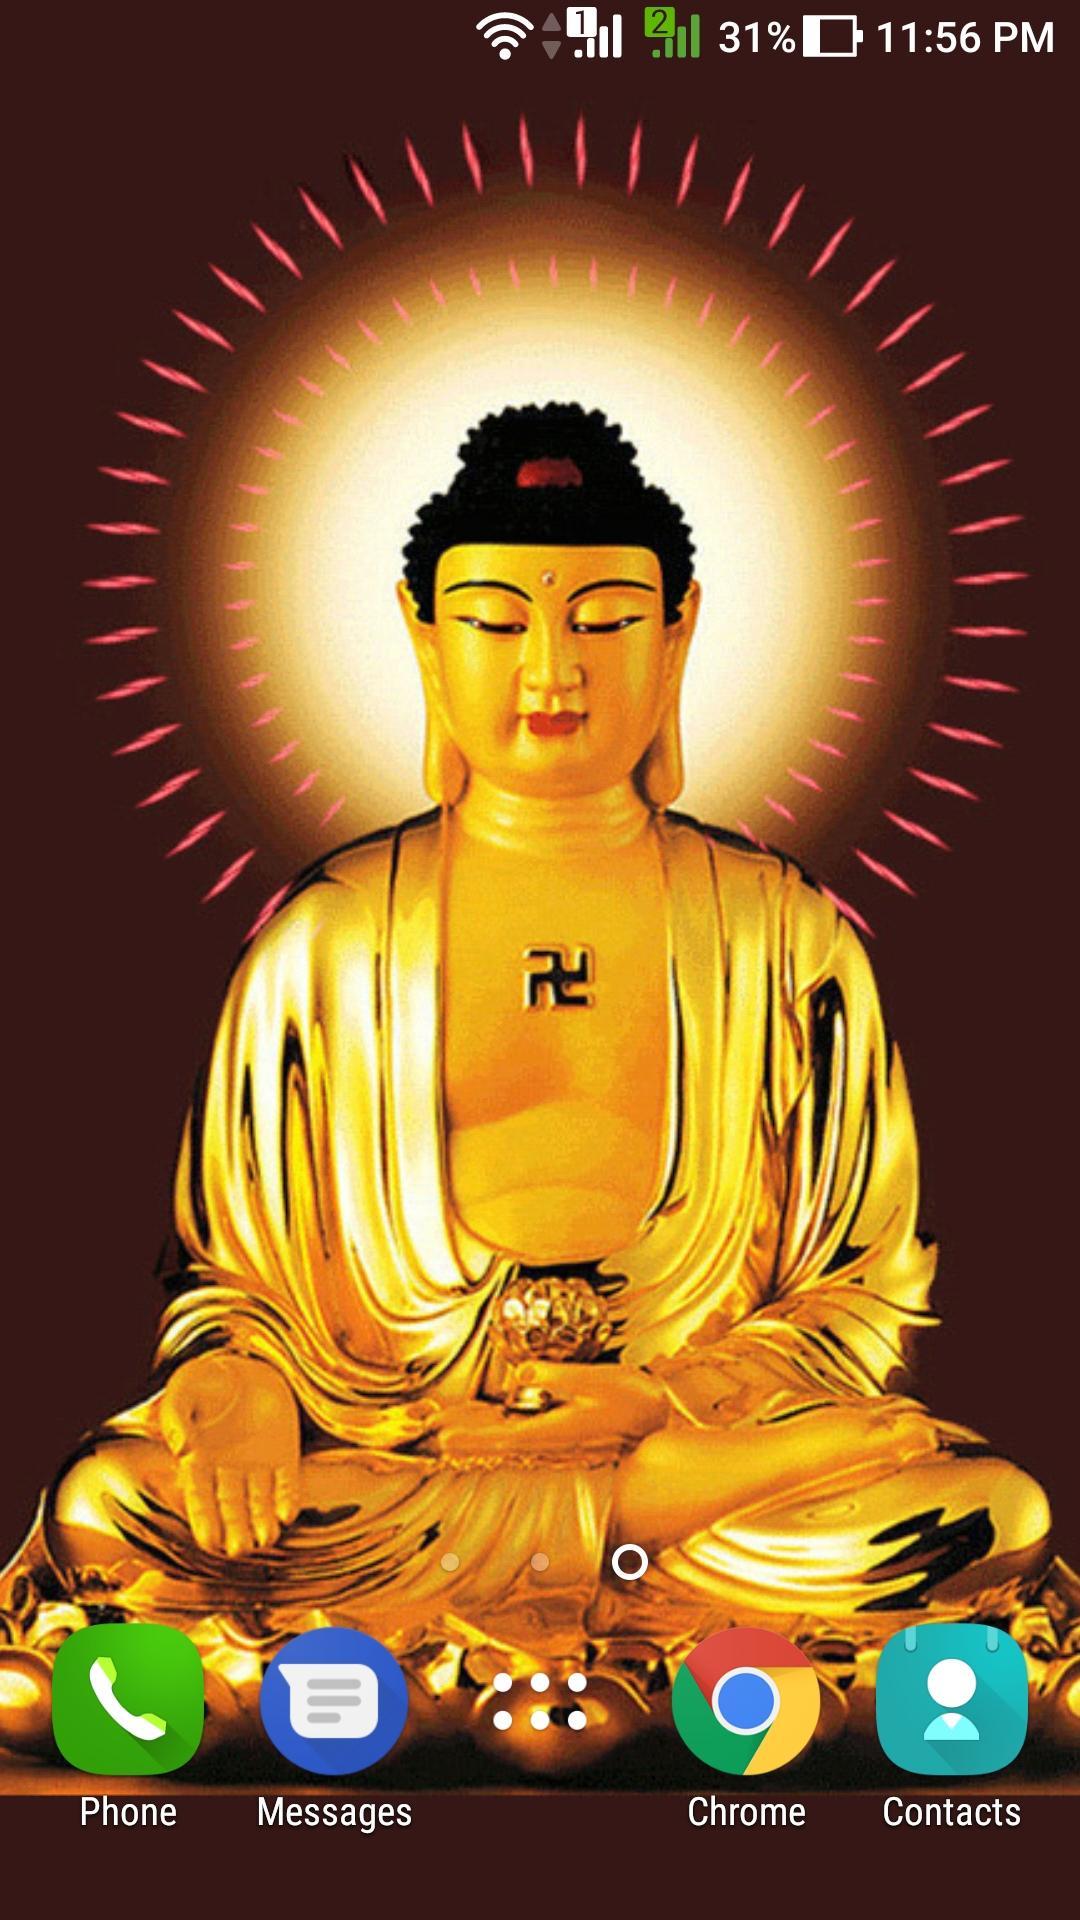 Niệm Phật - A Di Đà Phật APK: Tải và khám phá ứng dụng Niệm Phật - A Di Đà Phật APK với những bức ảnh tuyệt đẹp. Bạn sẽ được trải nghiệm cảm giác tĩnh tâm, đắm chìm trong những khoảnh khắc yên bình bên Phật Thầy. Một trải nghiệm tuyệt vời cho những ai yêu thích niệm Phật.